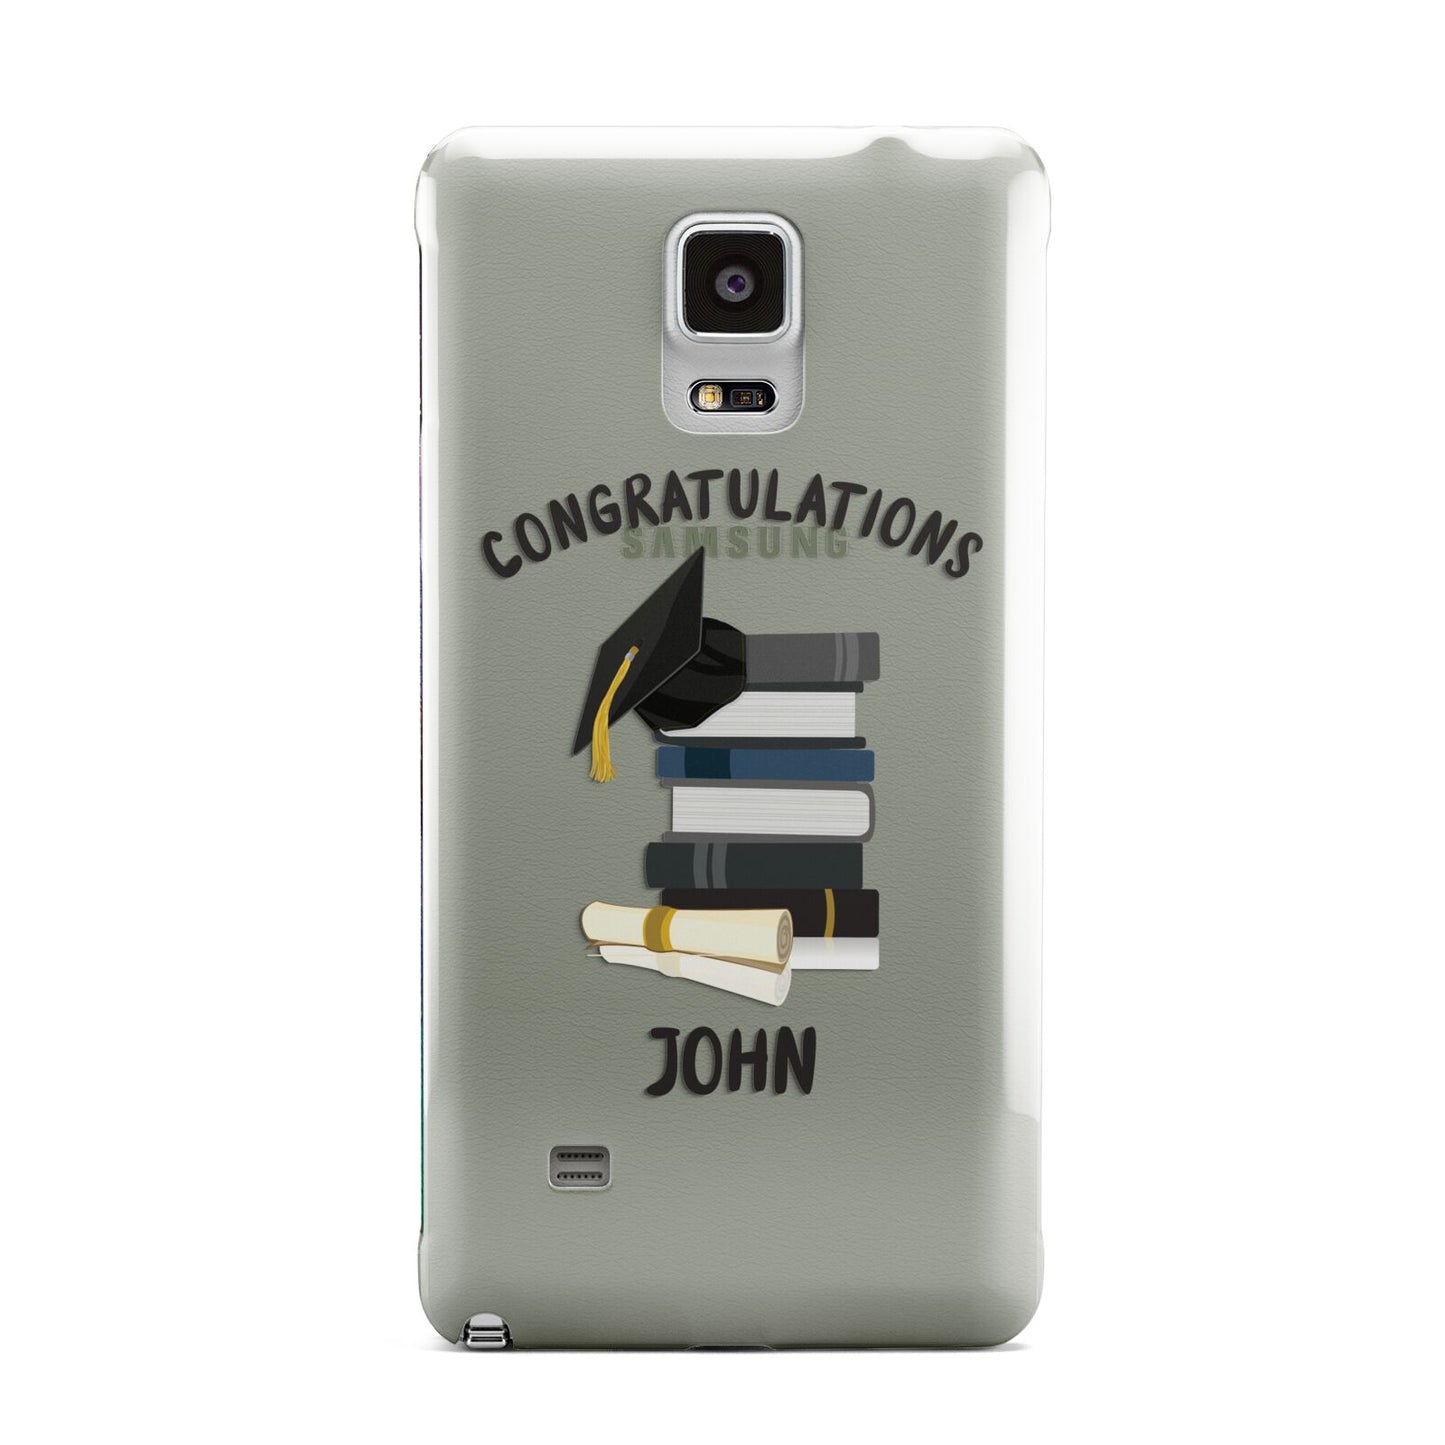 Congratulations Graduate Samsung Galaxy Note 4 Case